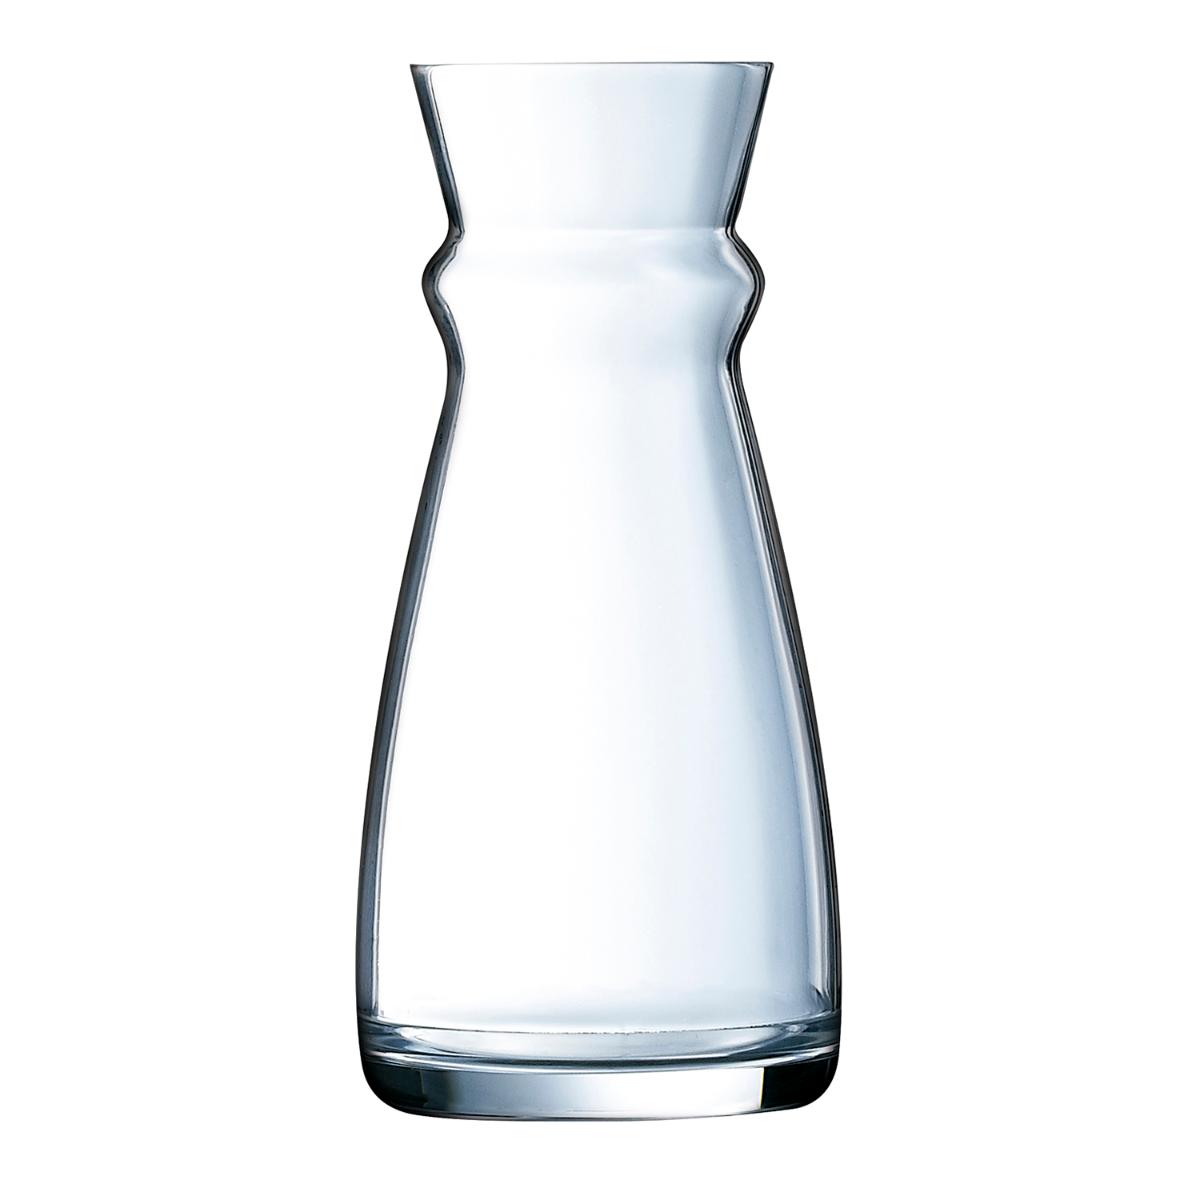 Arcoroc - ARCOROC FLUID Botella Vidrio 0,50L Transparente Brillo Fabricado en Francia , Facil de limpiar Reciclable , Ecológico , 100% higiénico , Extra resistente , No poroso , Vidrio templado extra resistente , Extra fuerte , Material 100% saludable , Larga durac